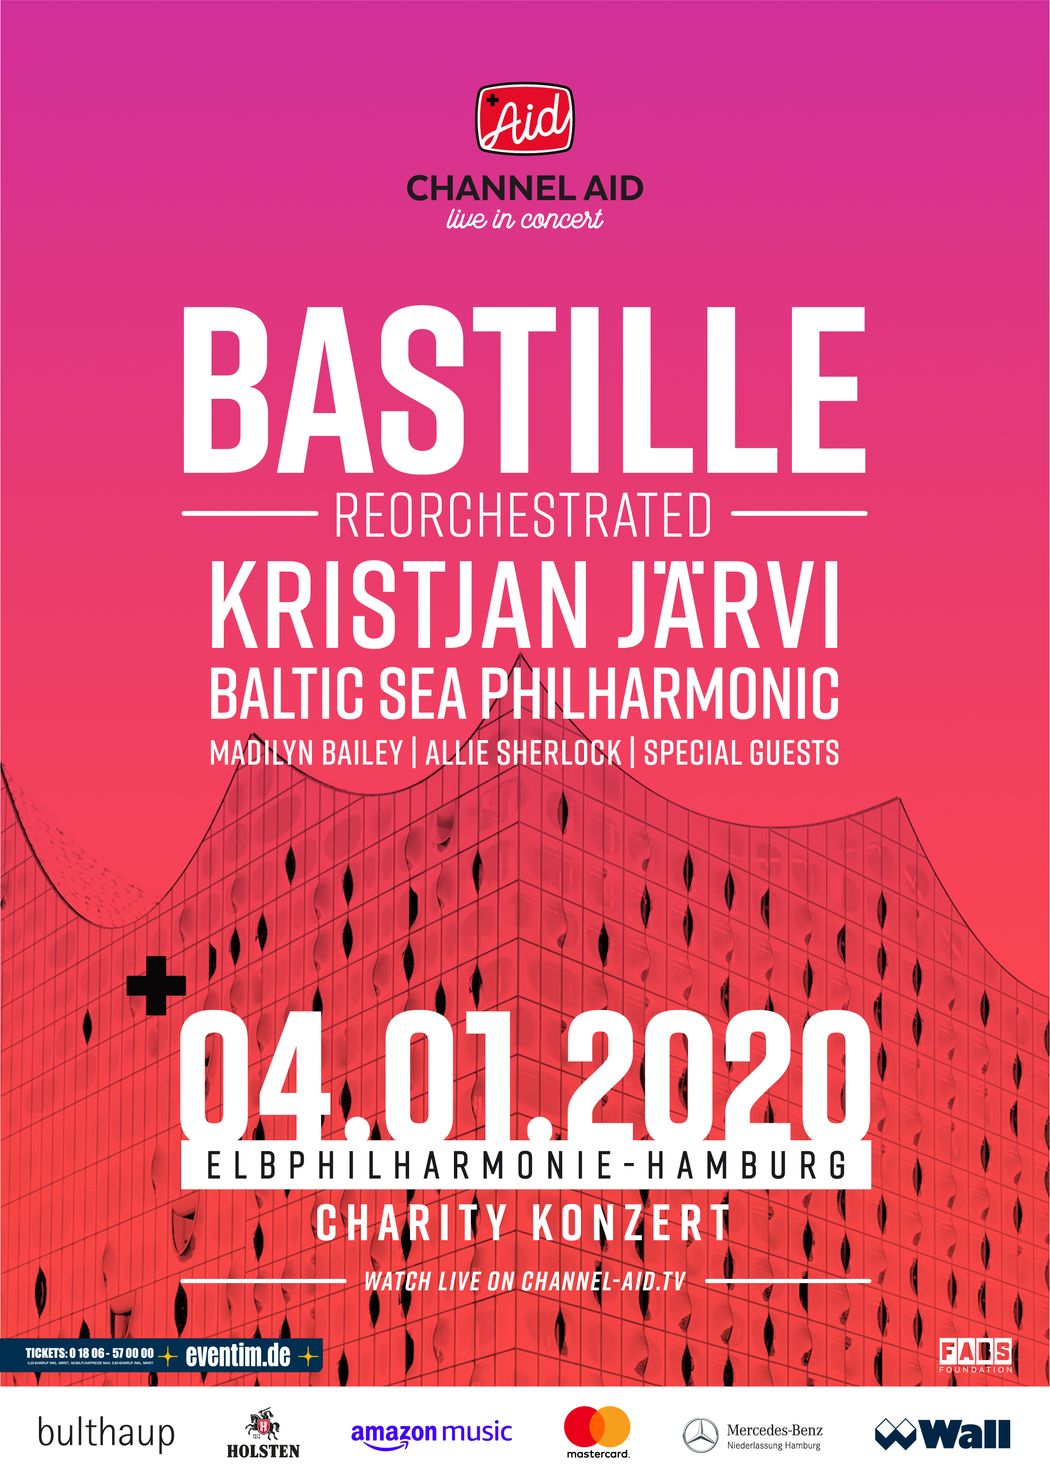 YouTube goes Charity - Channel Aid präsentiert die internationale Top-Band Bastille zusammen mit Baltic Sea Philharmonic unter der Leitung von Kristjan Järvi in der Elbphilharmonie Hamburg